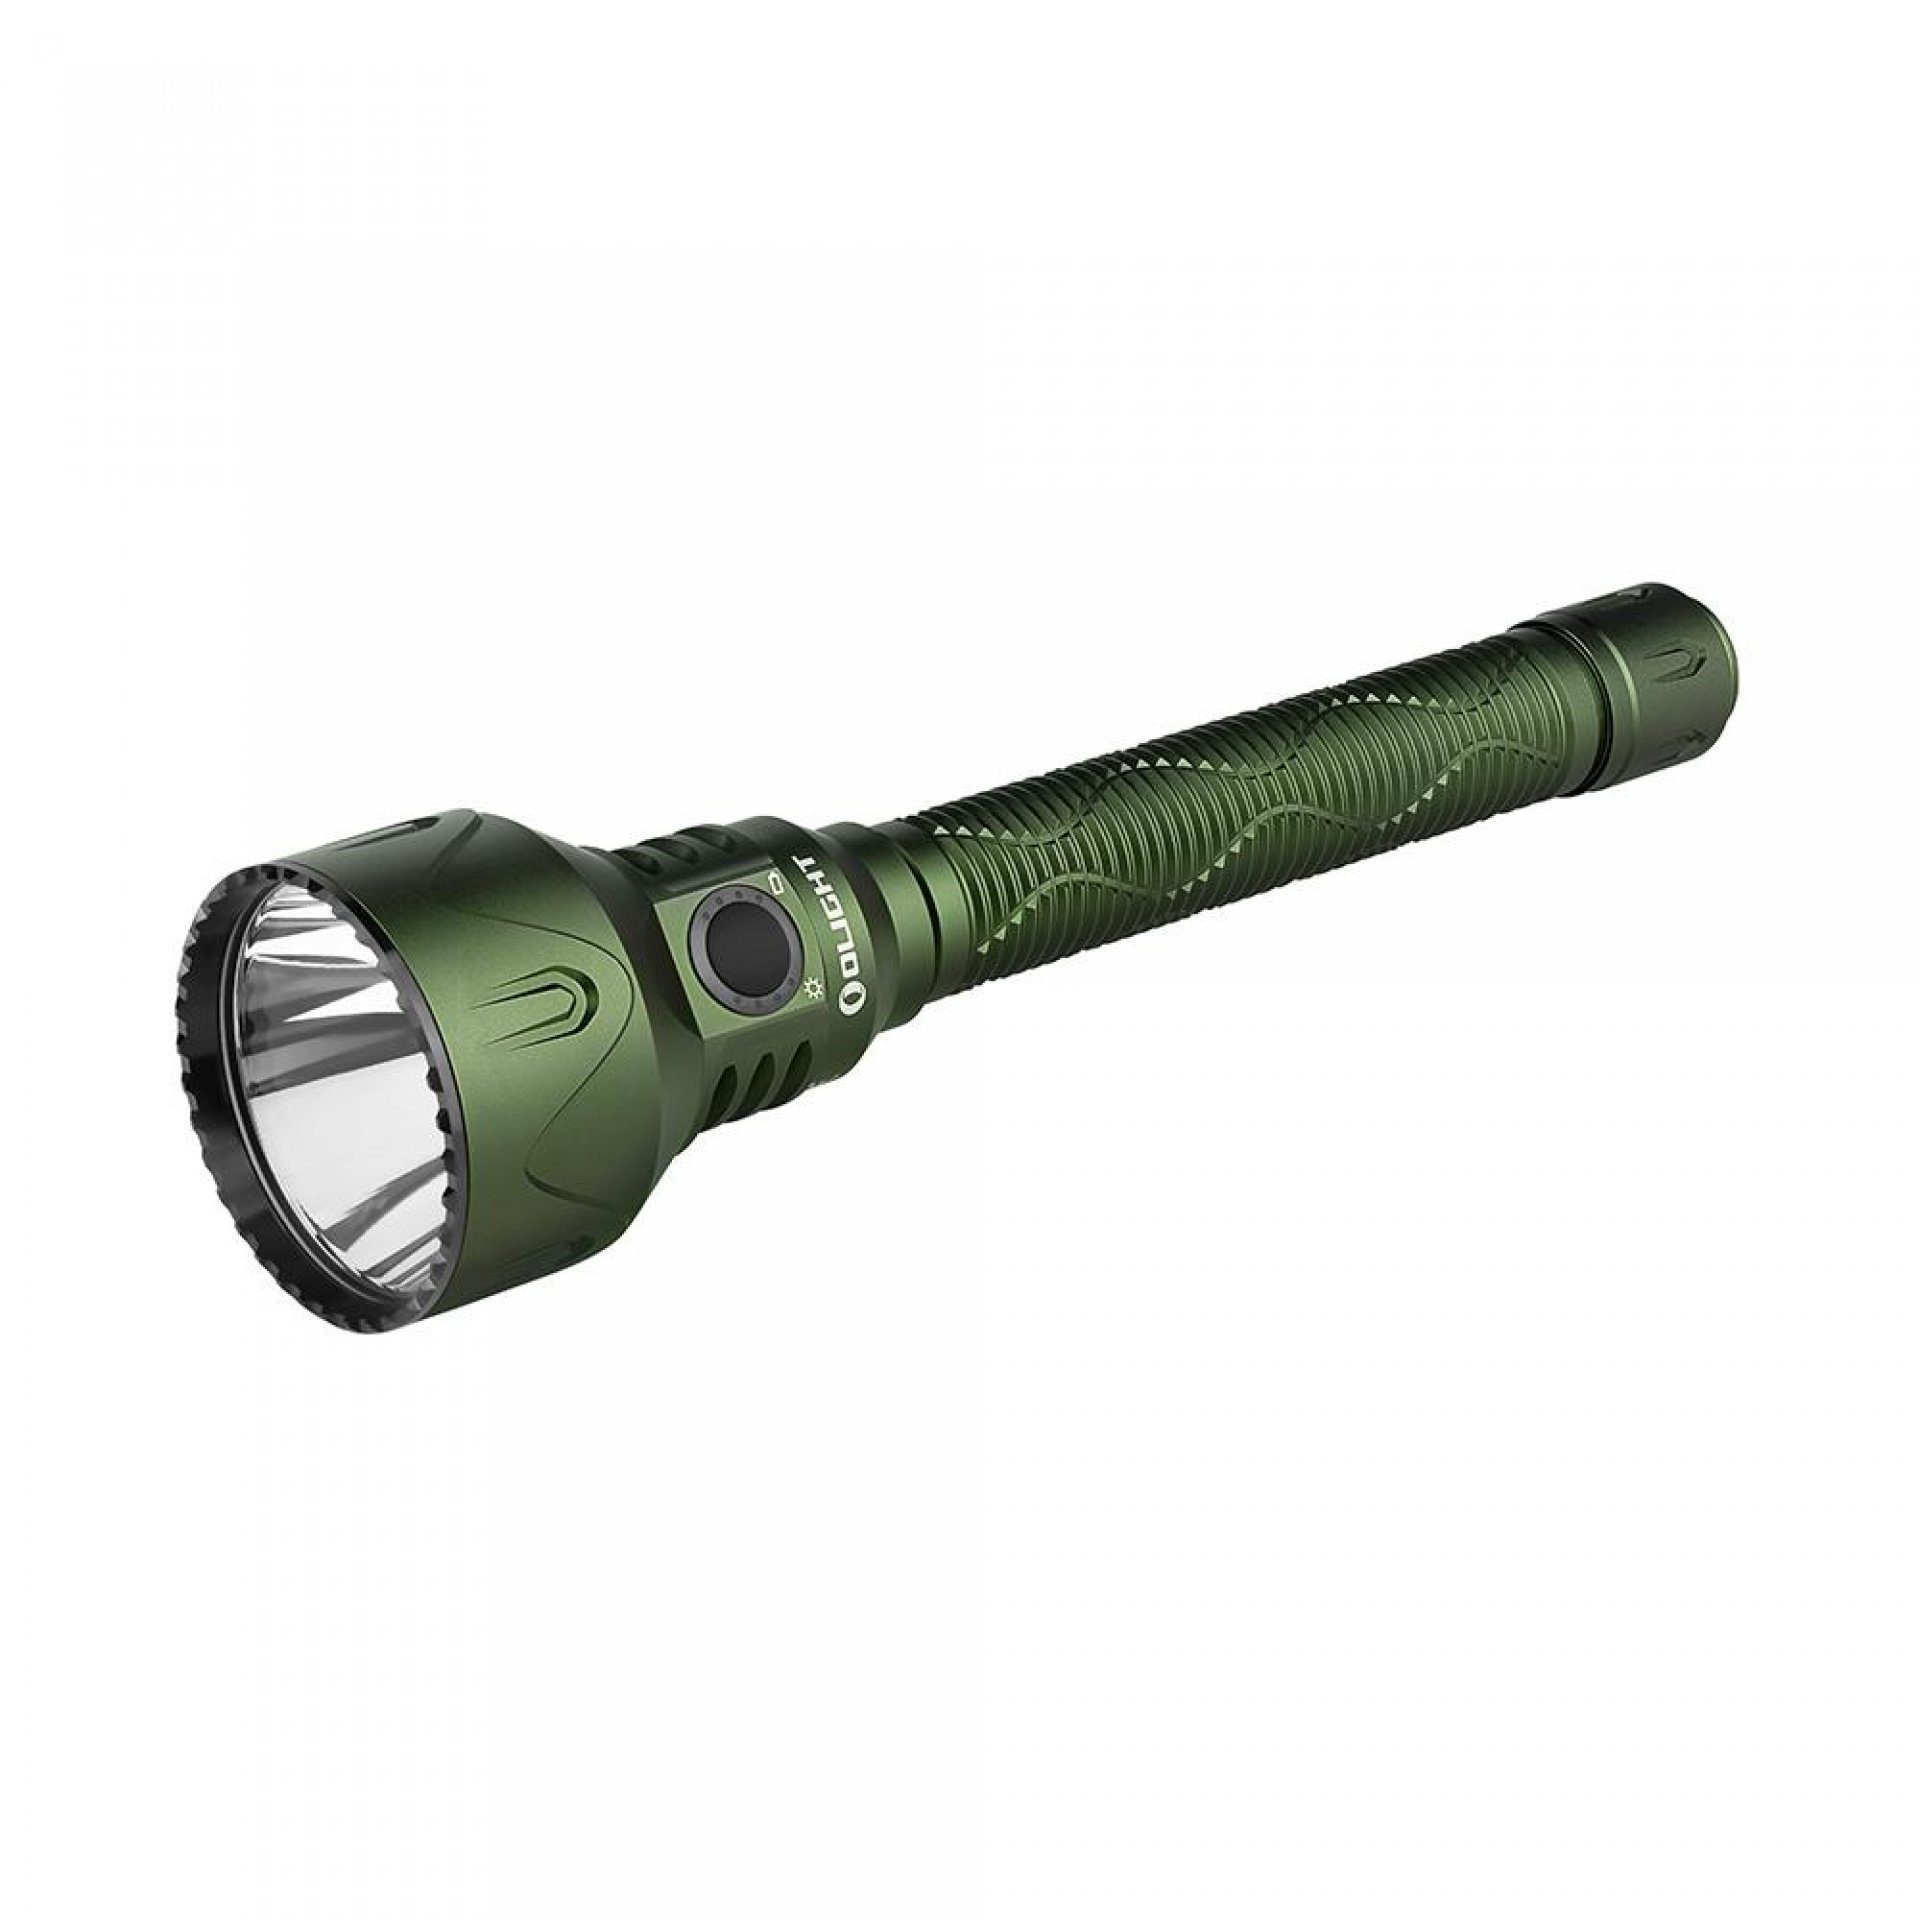 OLIGHT LED Suche Campen Javelot 2 Taschenlampe, Starke und Taschenlampe Grün Jagen Rettung Wandern für Leistungsstarke Pro Flashlight OD Olight